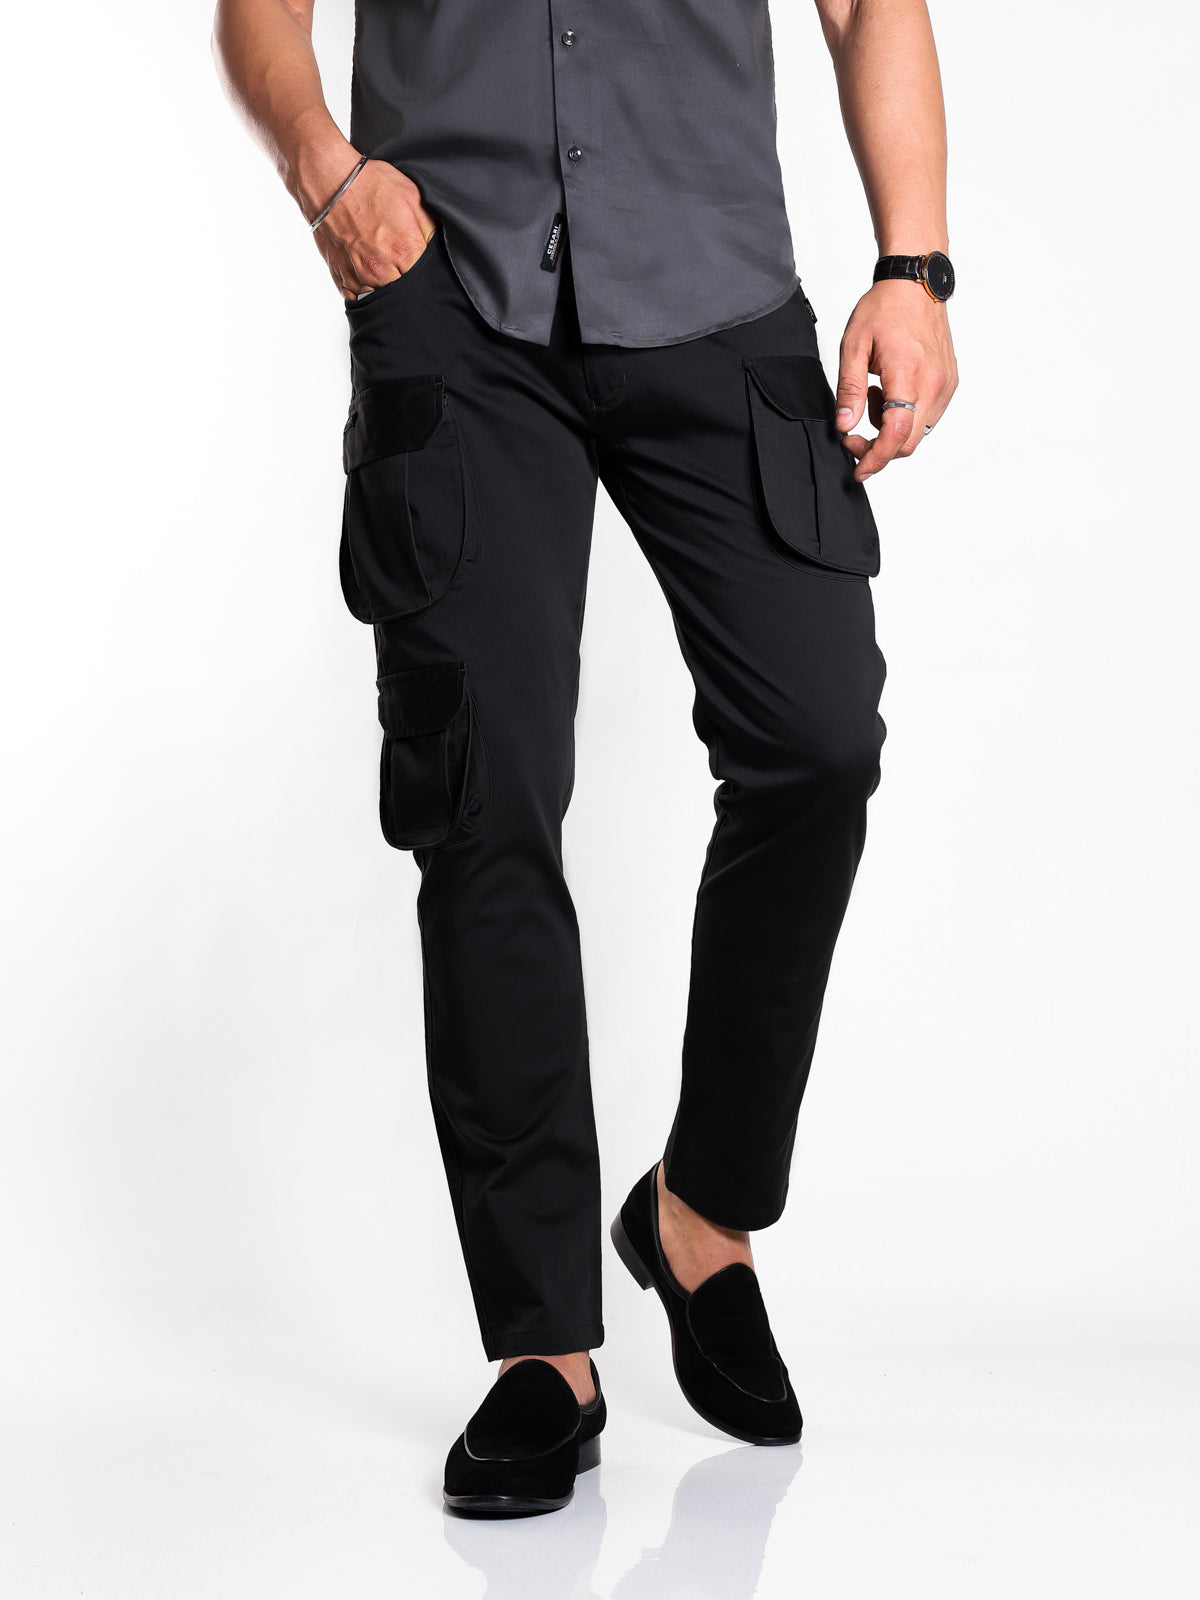 Reverie™ Men's 7 Pocket Trouser Scrub Pant | Medelita